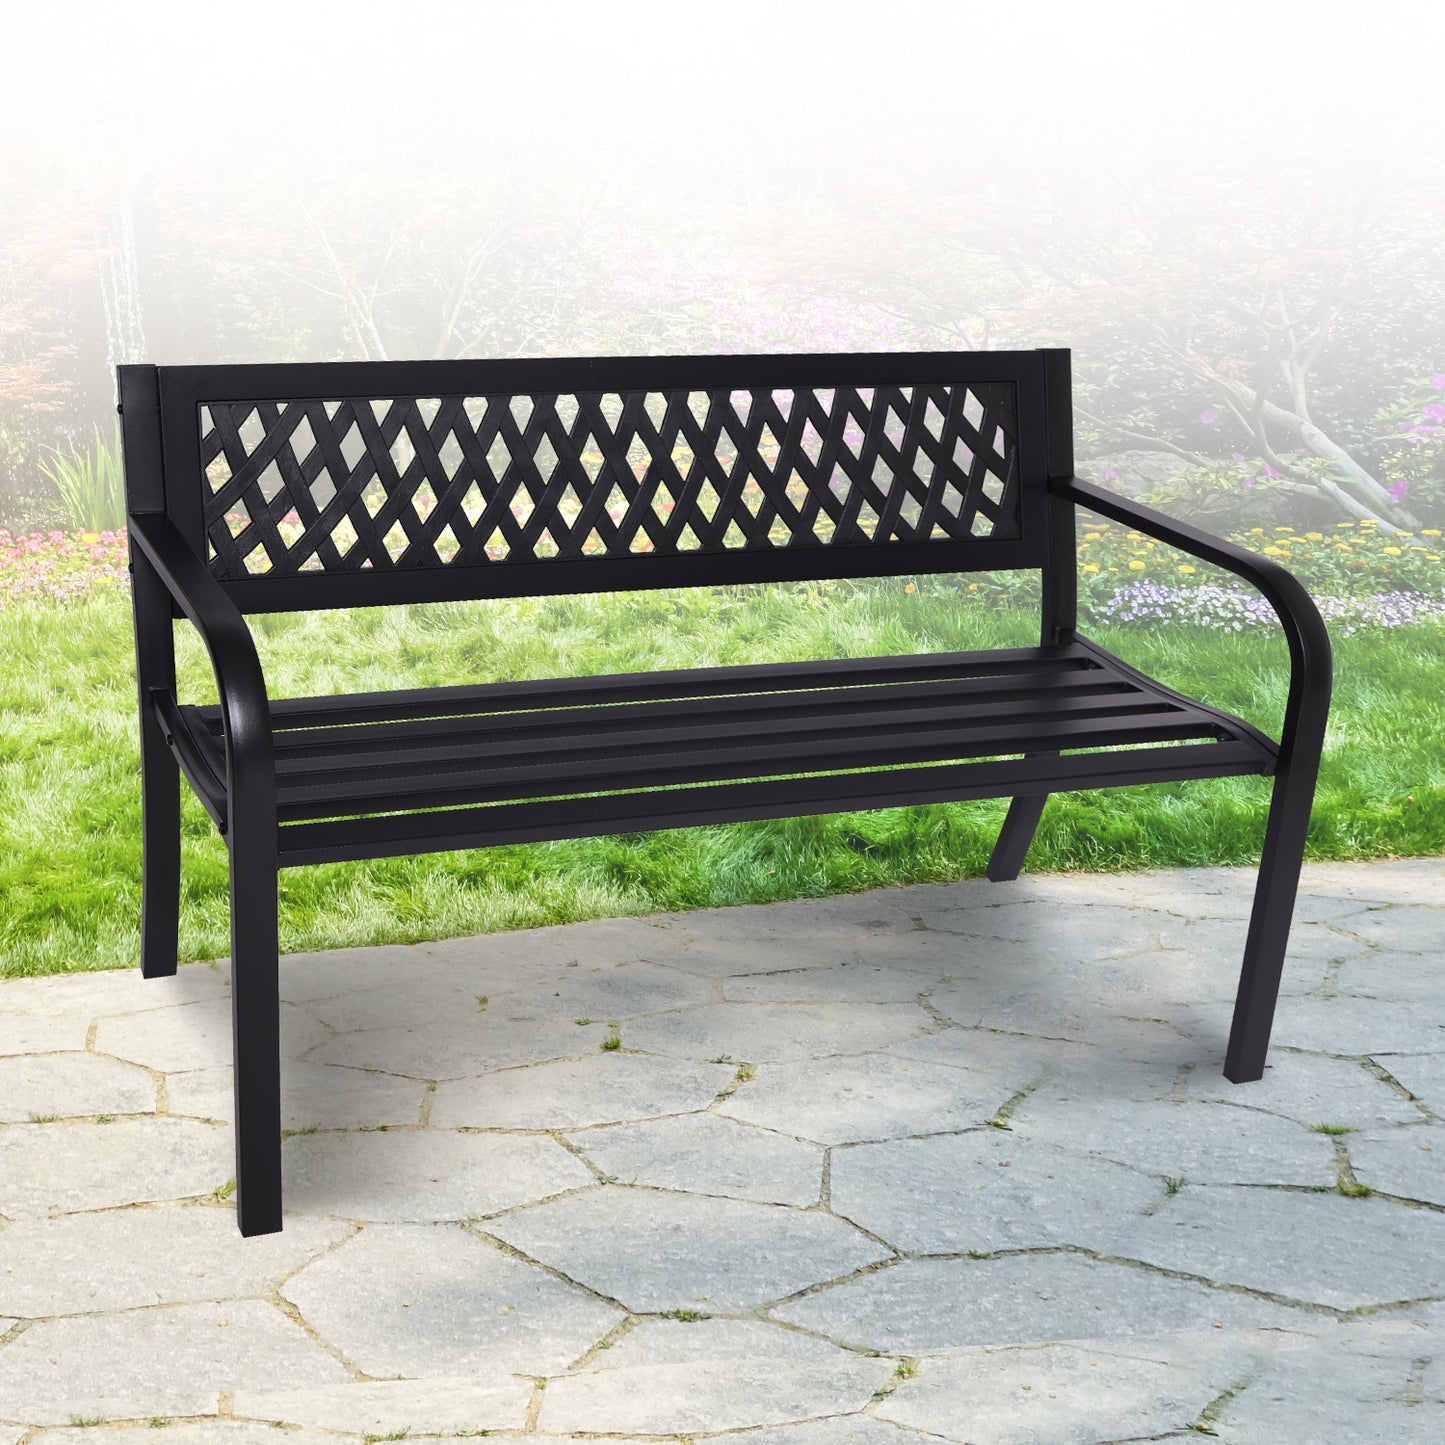 Outdoor Bench Wallaroo Steel Metal Garden Black - Lattice Design